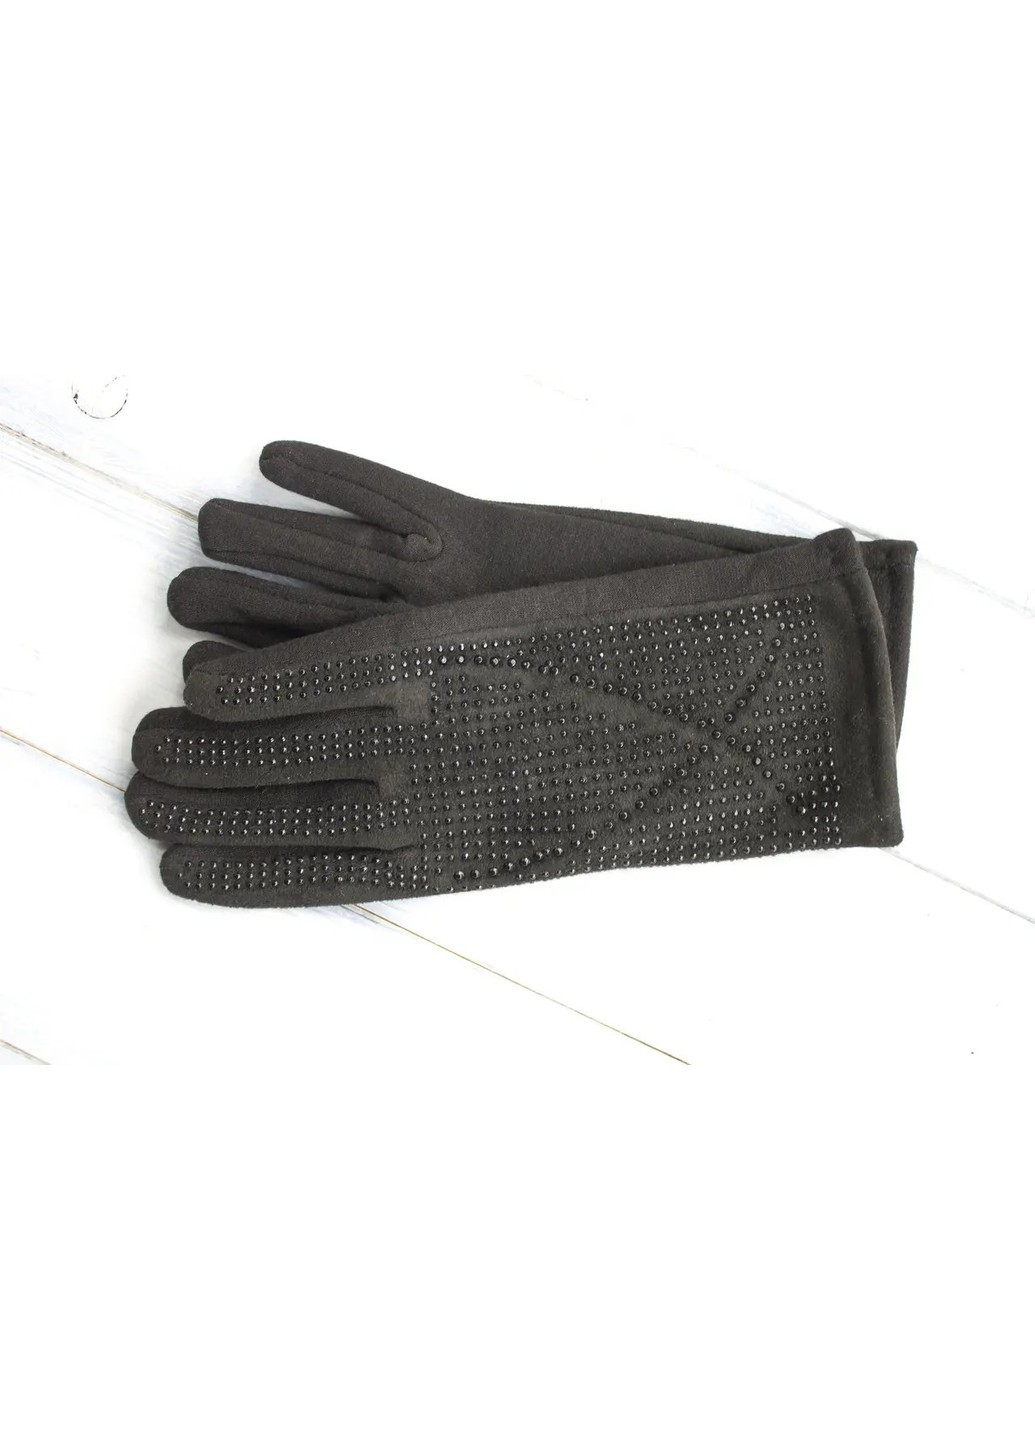 Жіночі розтяжні рукавички Чорні 192S3 L BR-S (261771588)